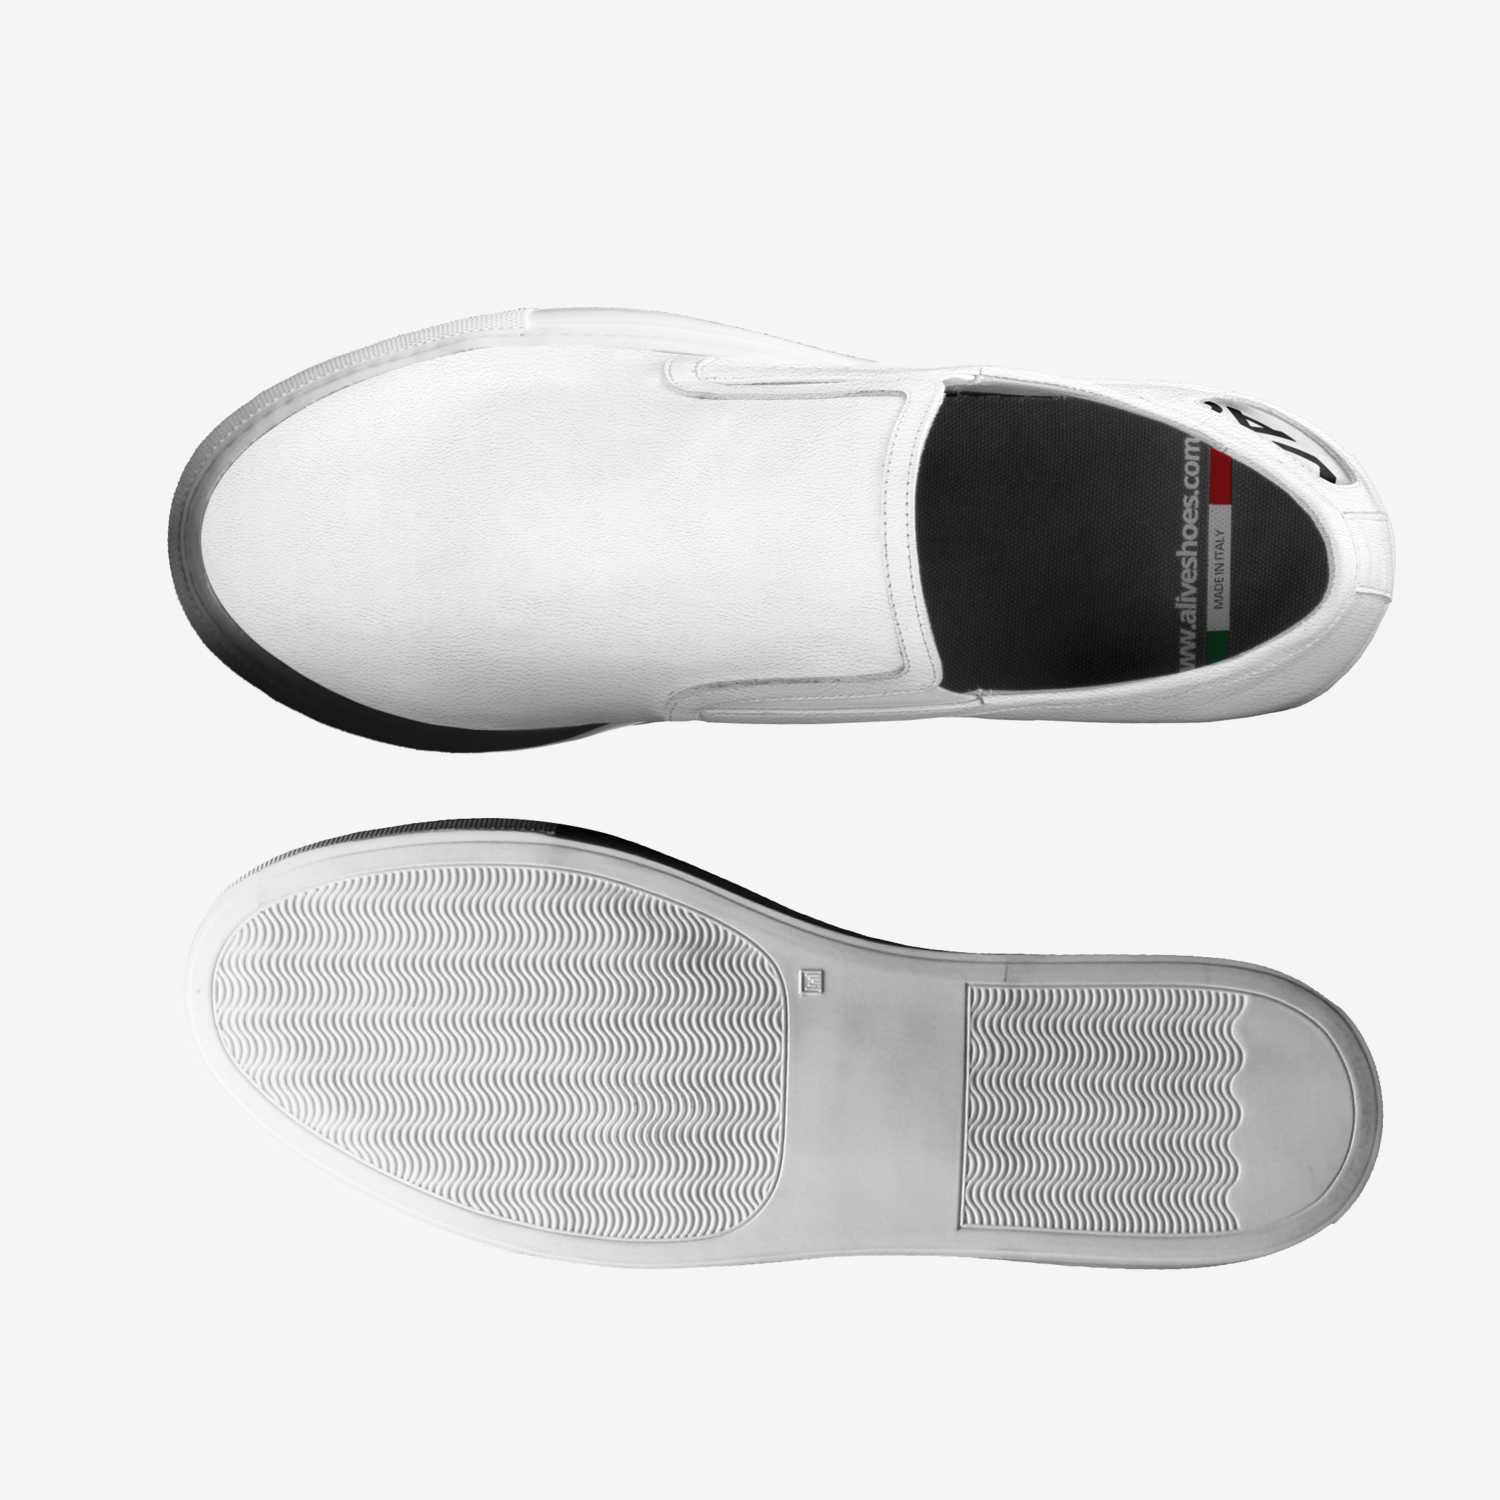 Vagabond Custom Shoe concept by Sc